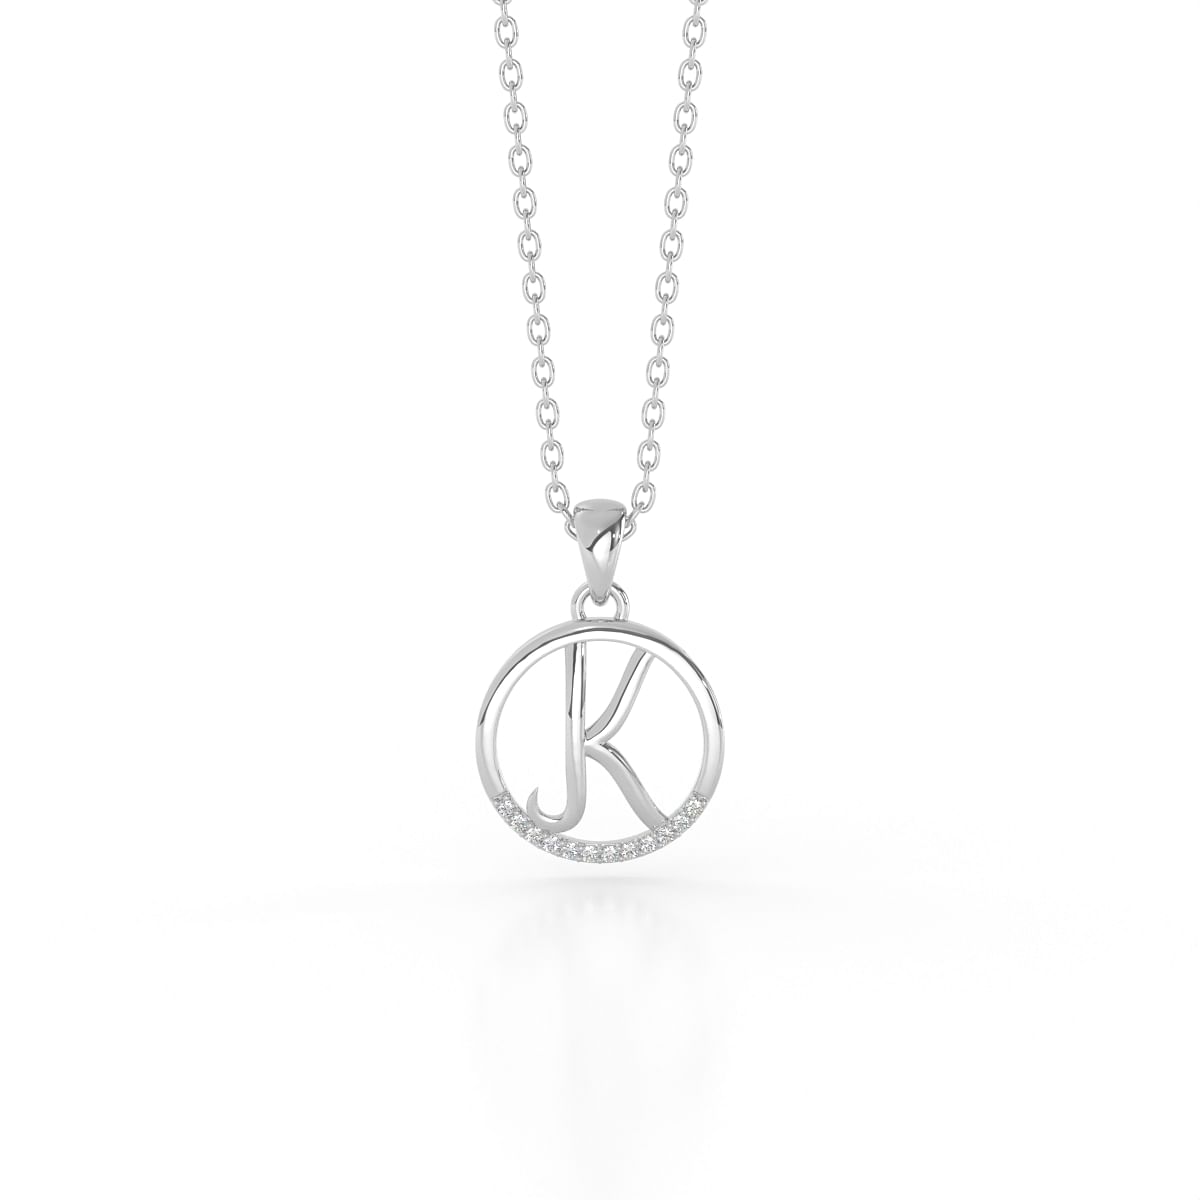 K alphabet letter white gold diamond pendant